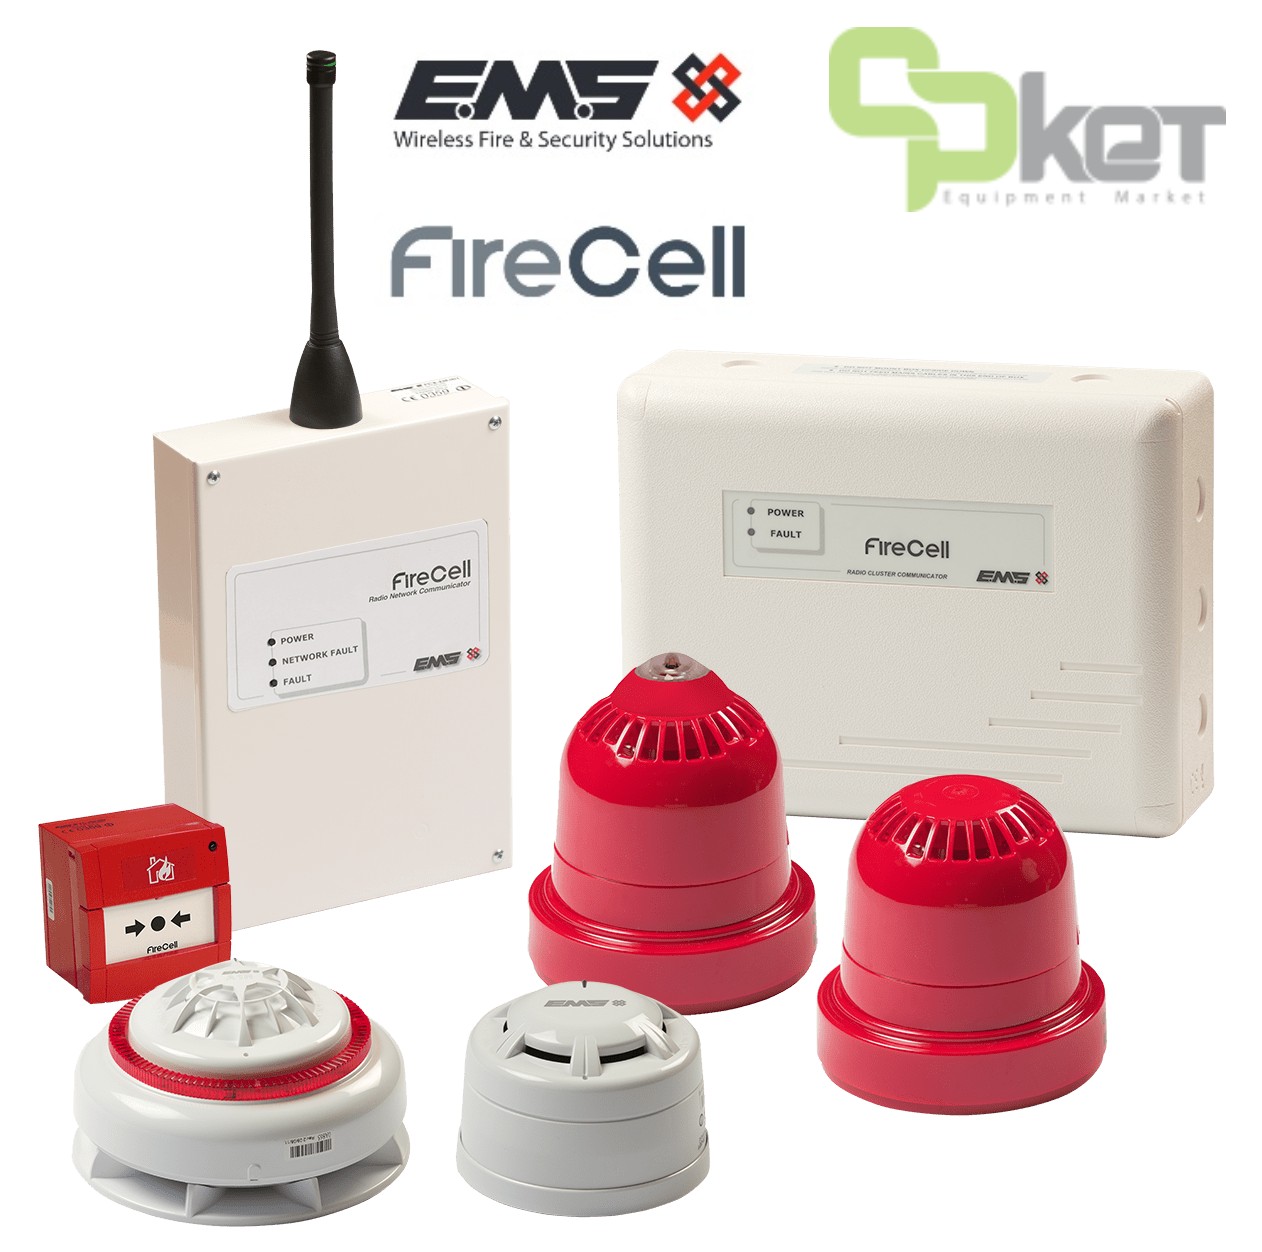 مدل فایرسل FireCell از برند ای ام اس EMS